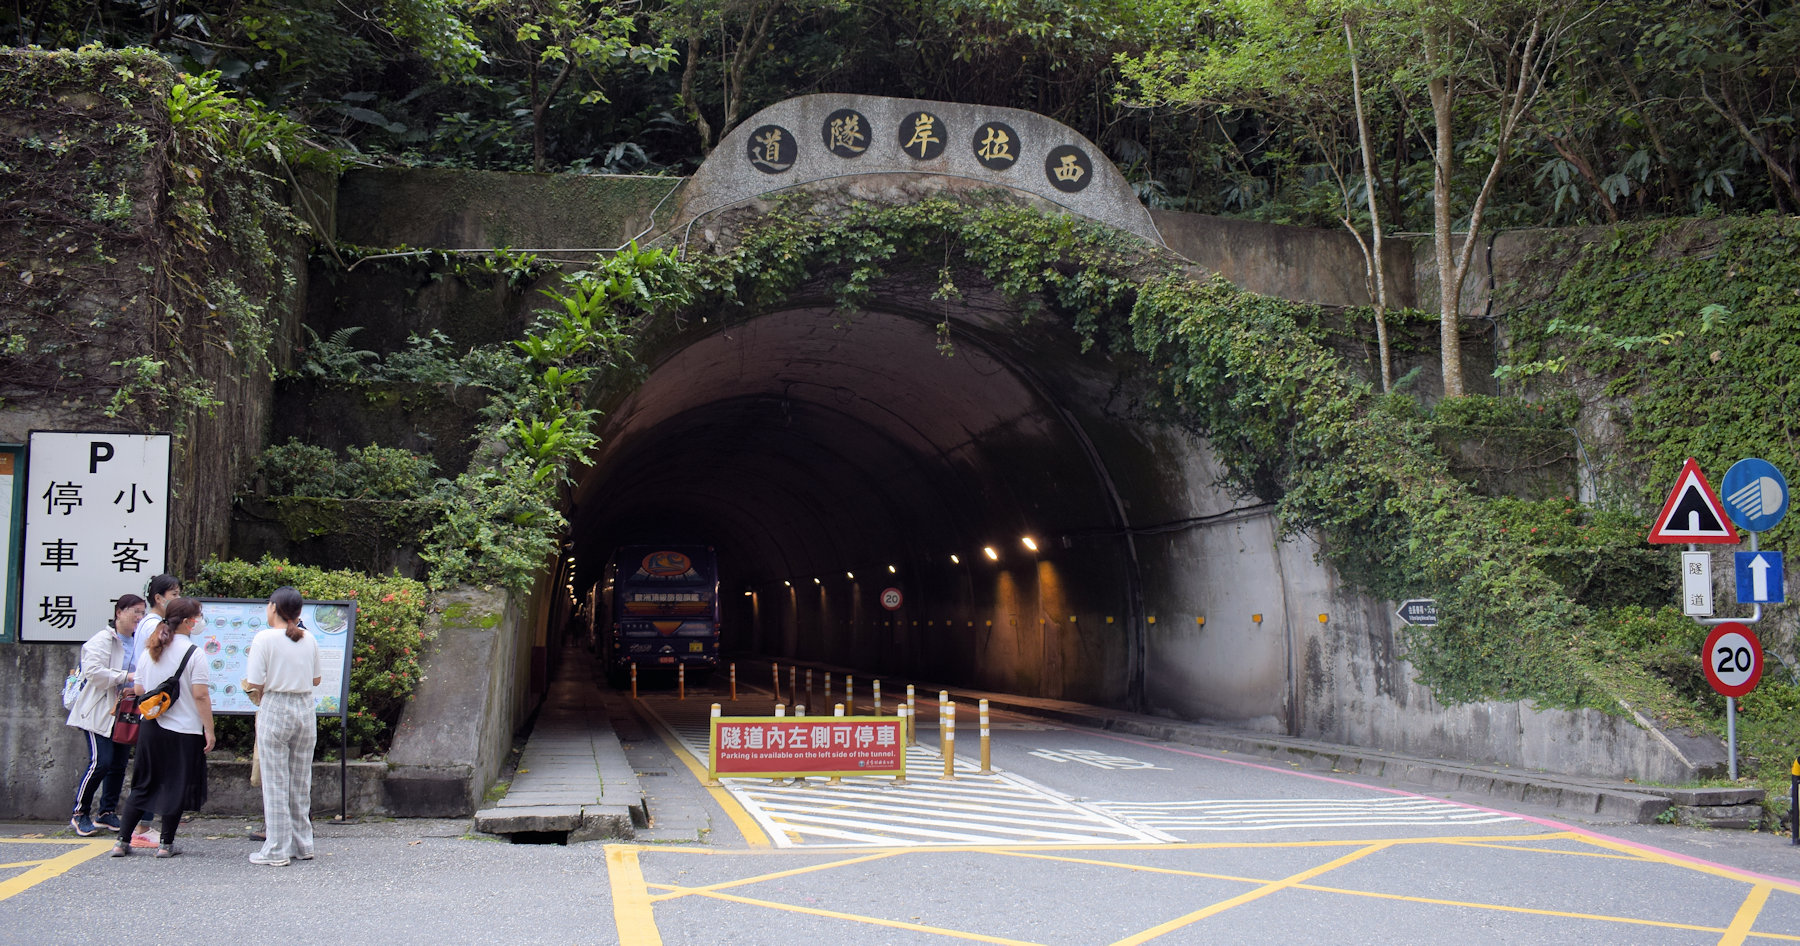 Questo NON è il tunnel descritto nell'articolo, si tratta invece di un tunnel qualsiasi a Taiwan